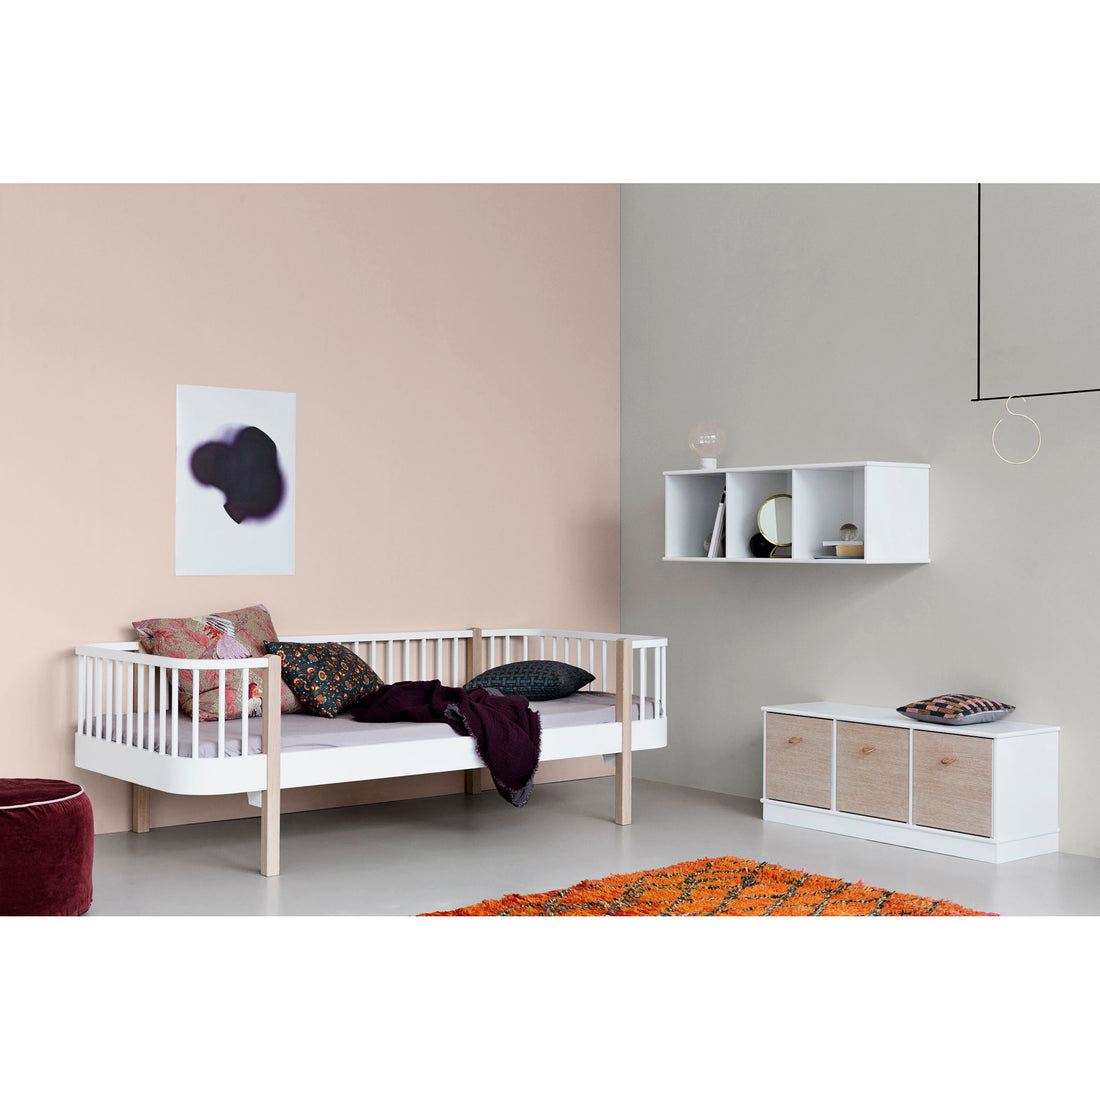 oliver-furniture-wood-shelving-unit-5x1-horizontal-shelf-with-base- (4)